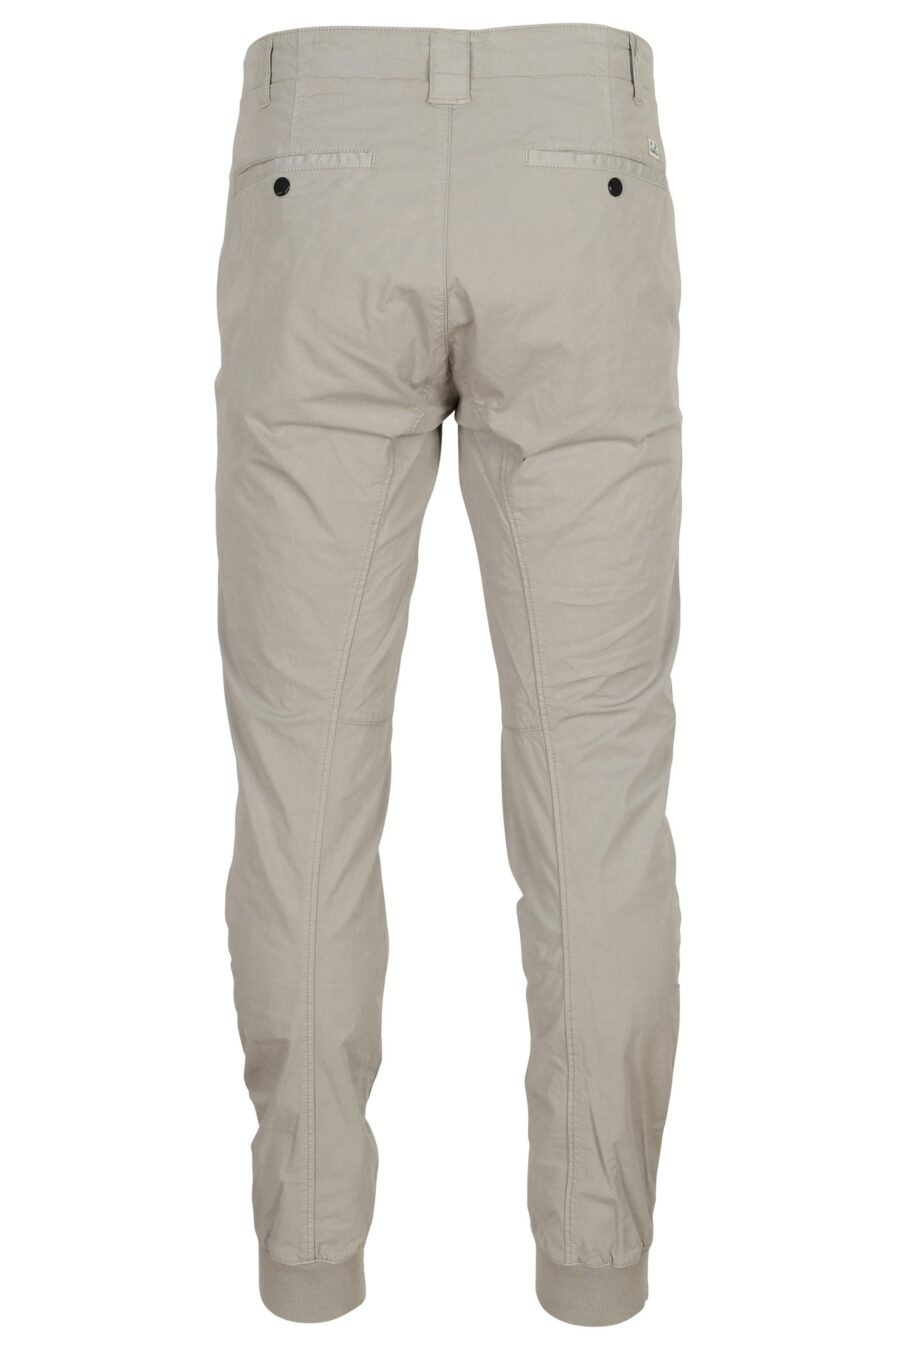 Pantalón gris ergonómico con minilogo - 7620943668377 1